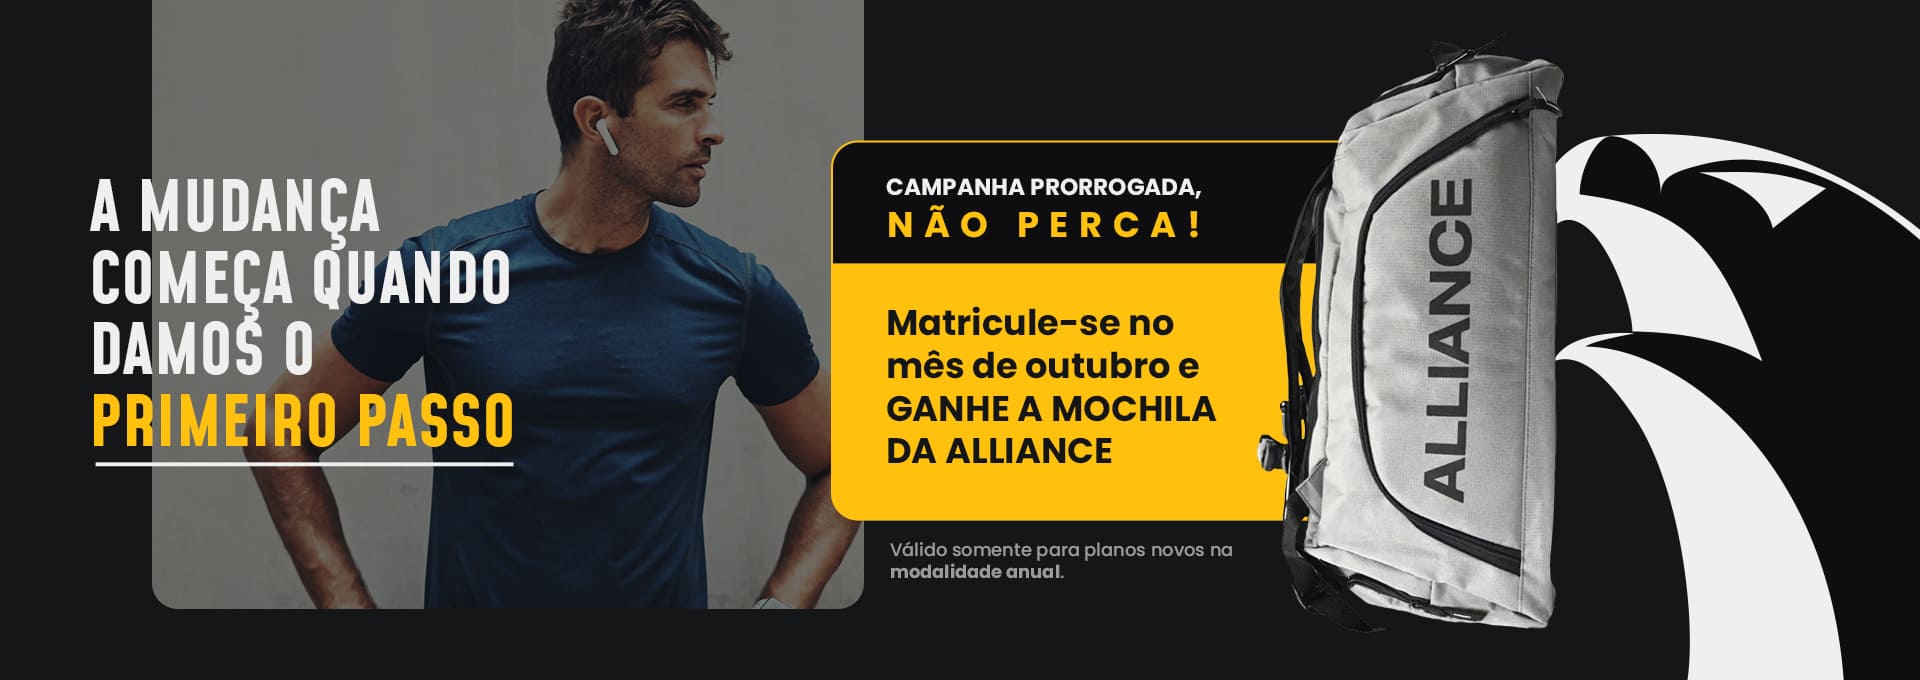 Banner_Site_Campanha_Prorrogada_Mochila